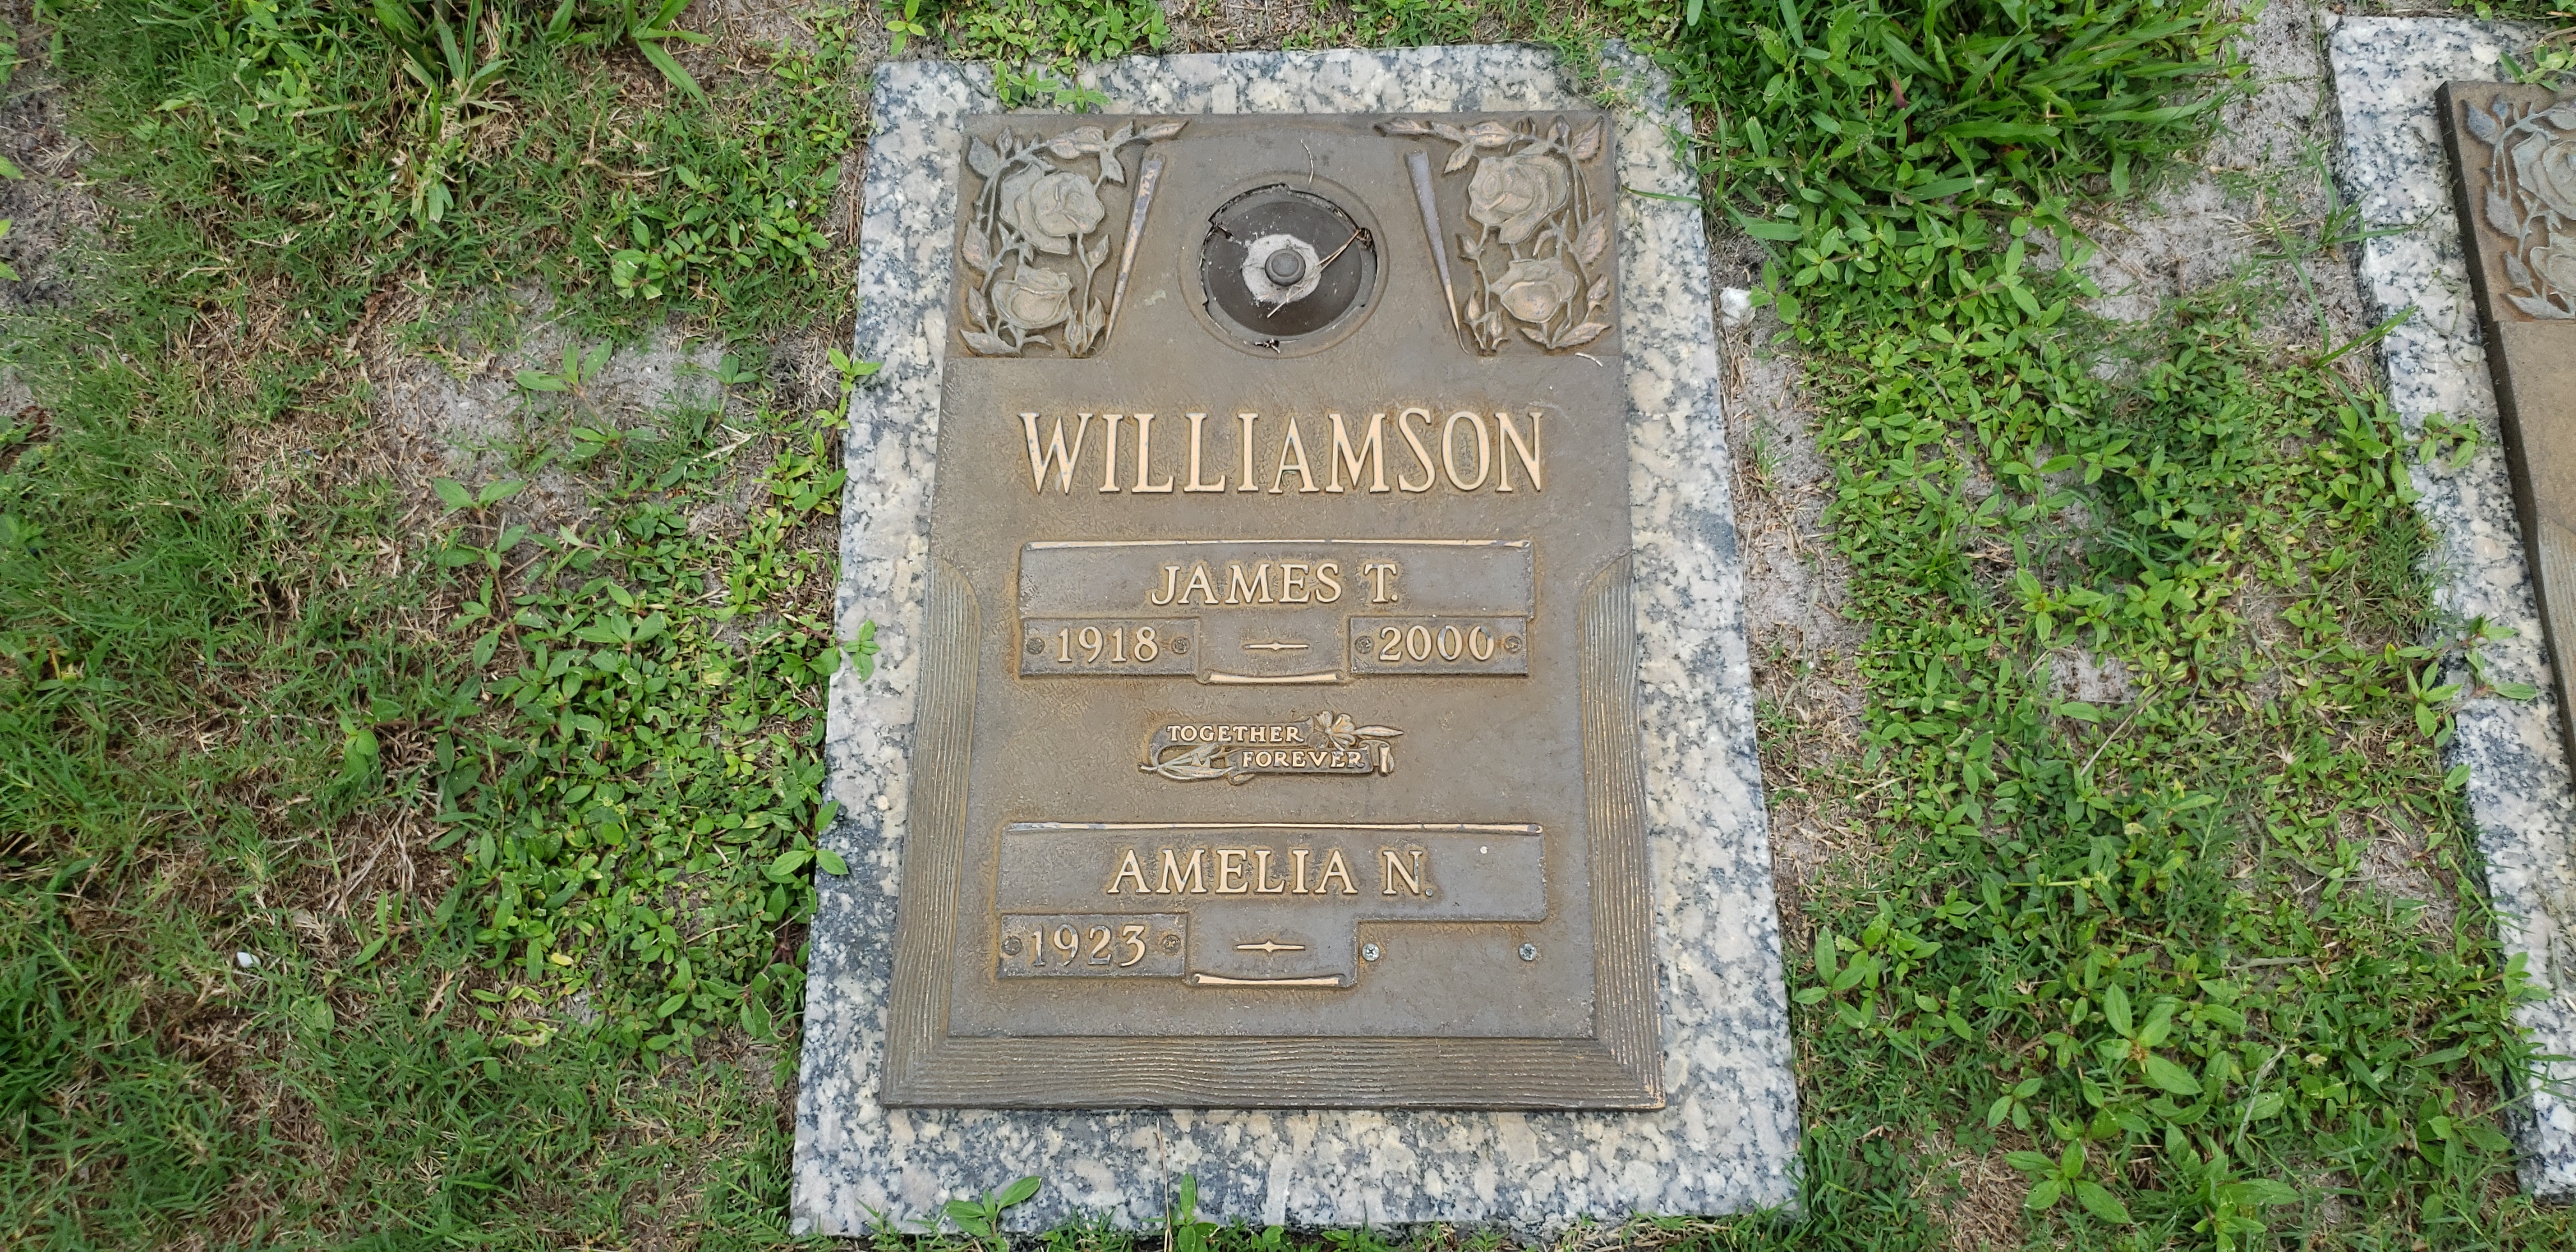 James T Williamson